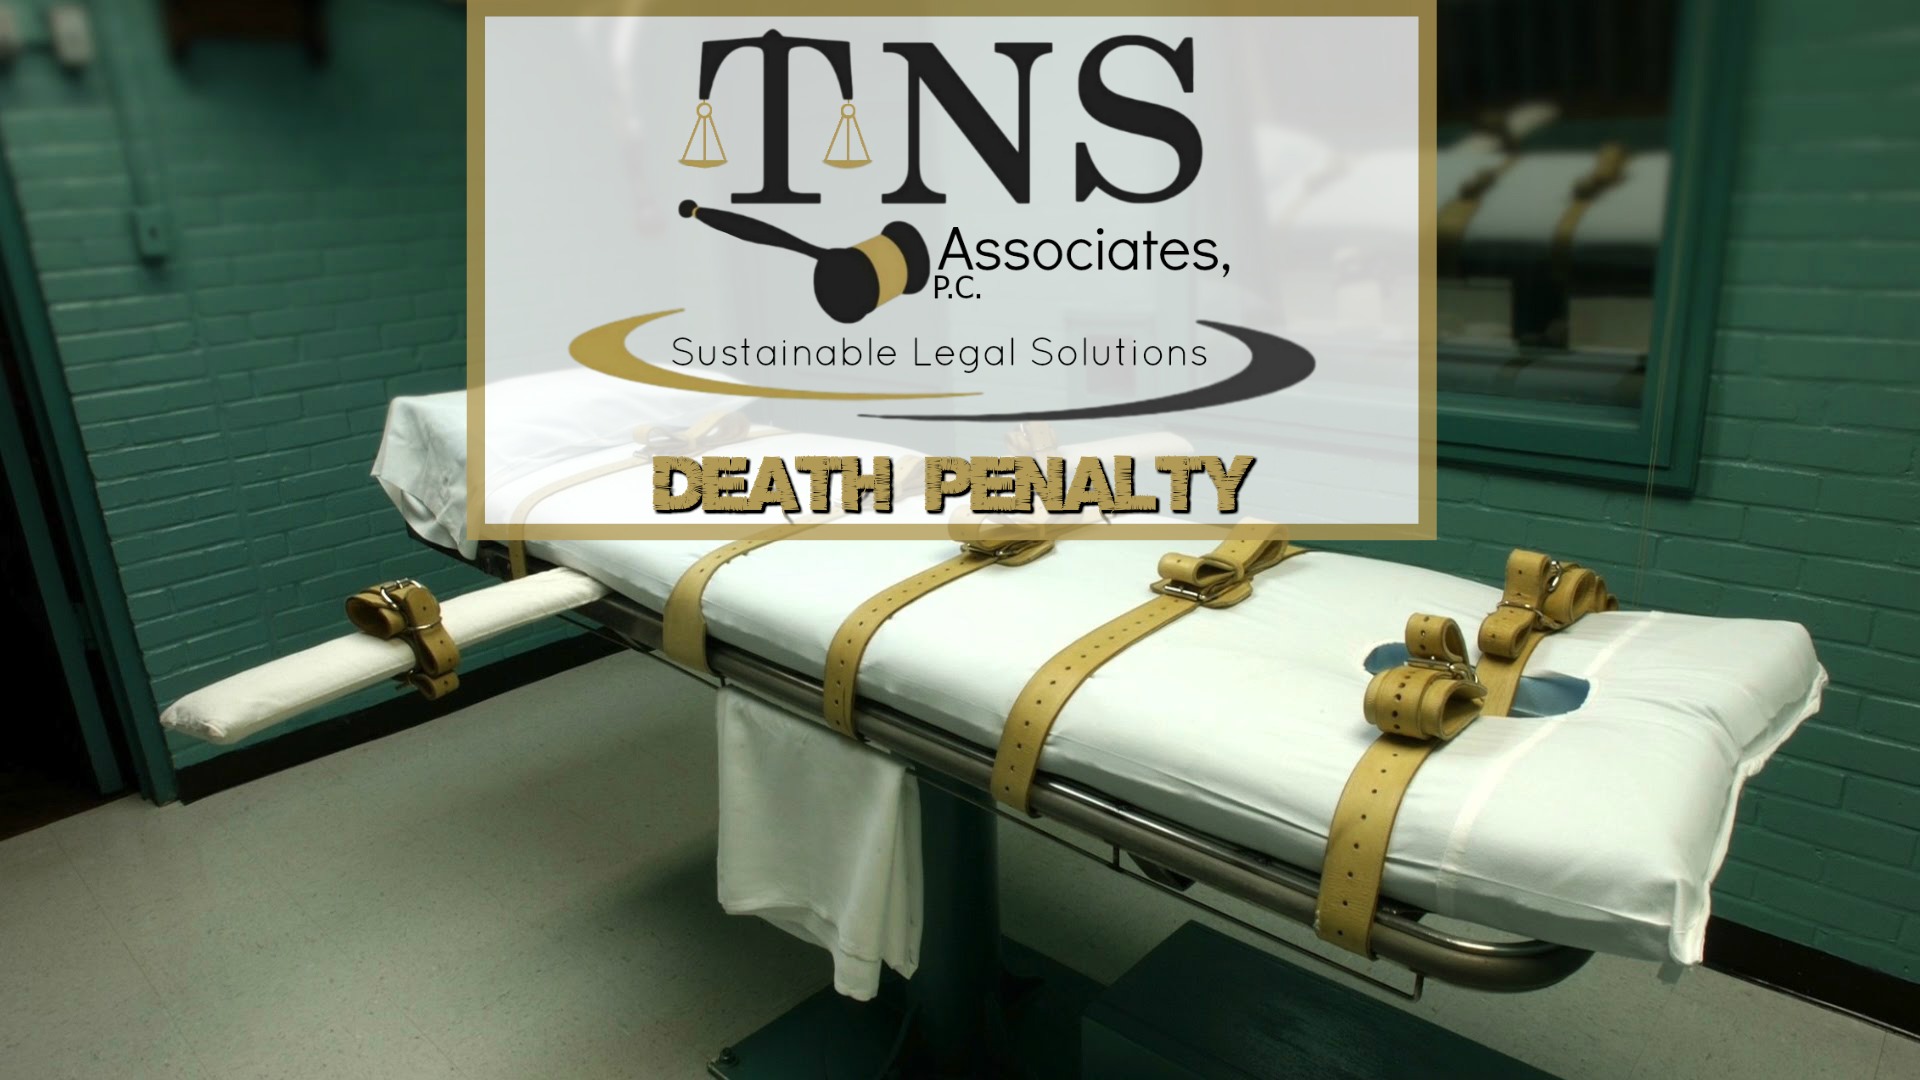 death-penalty